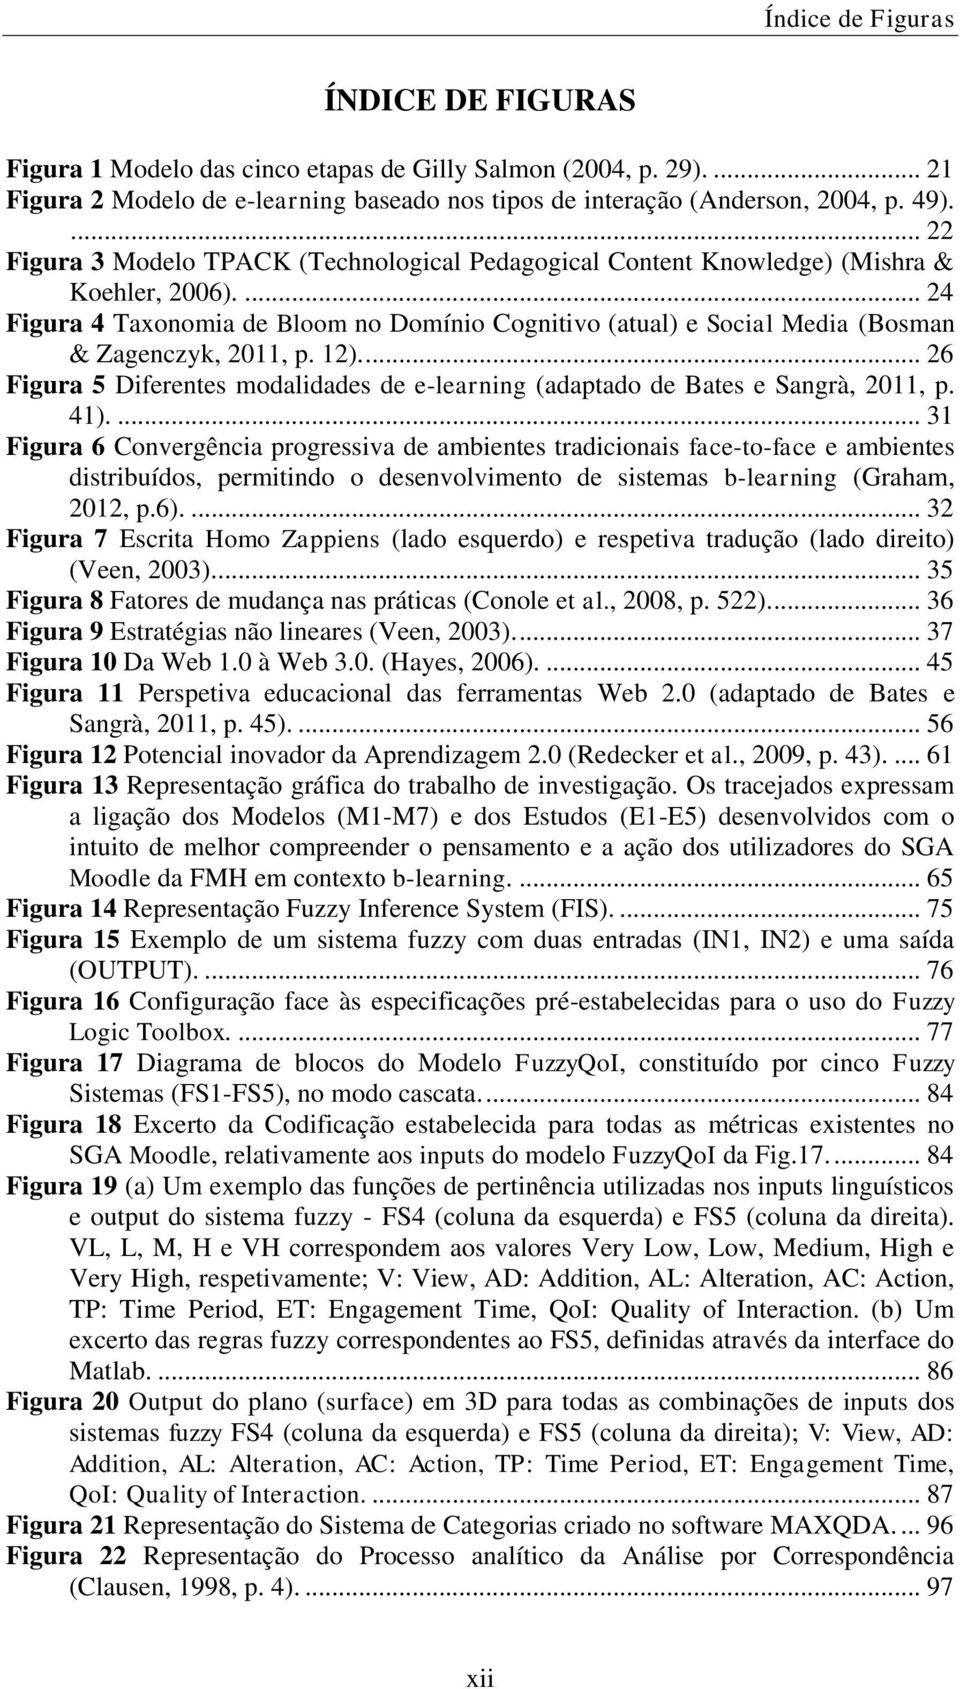 ... 24 Figura 4 Taxonomia de Bloom no Domínio Cognitivo (atual) e Social Media (Bosman & Zagenczyk, 2011, p. 12).... 26 Figura 5 Diferentes modalidades de e-learning (adaptado de Bates e Sangrà, 2011, p.